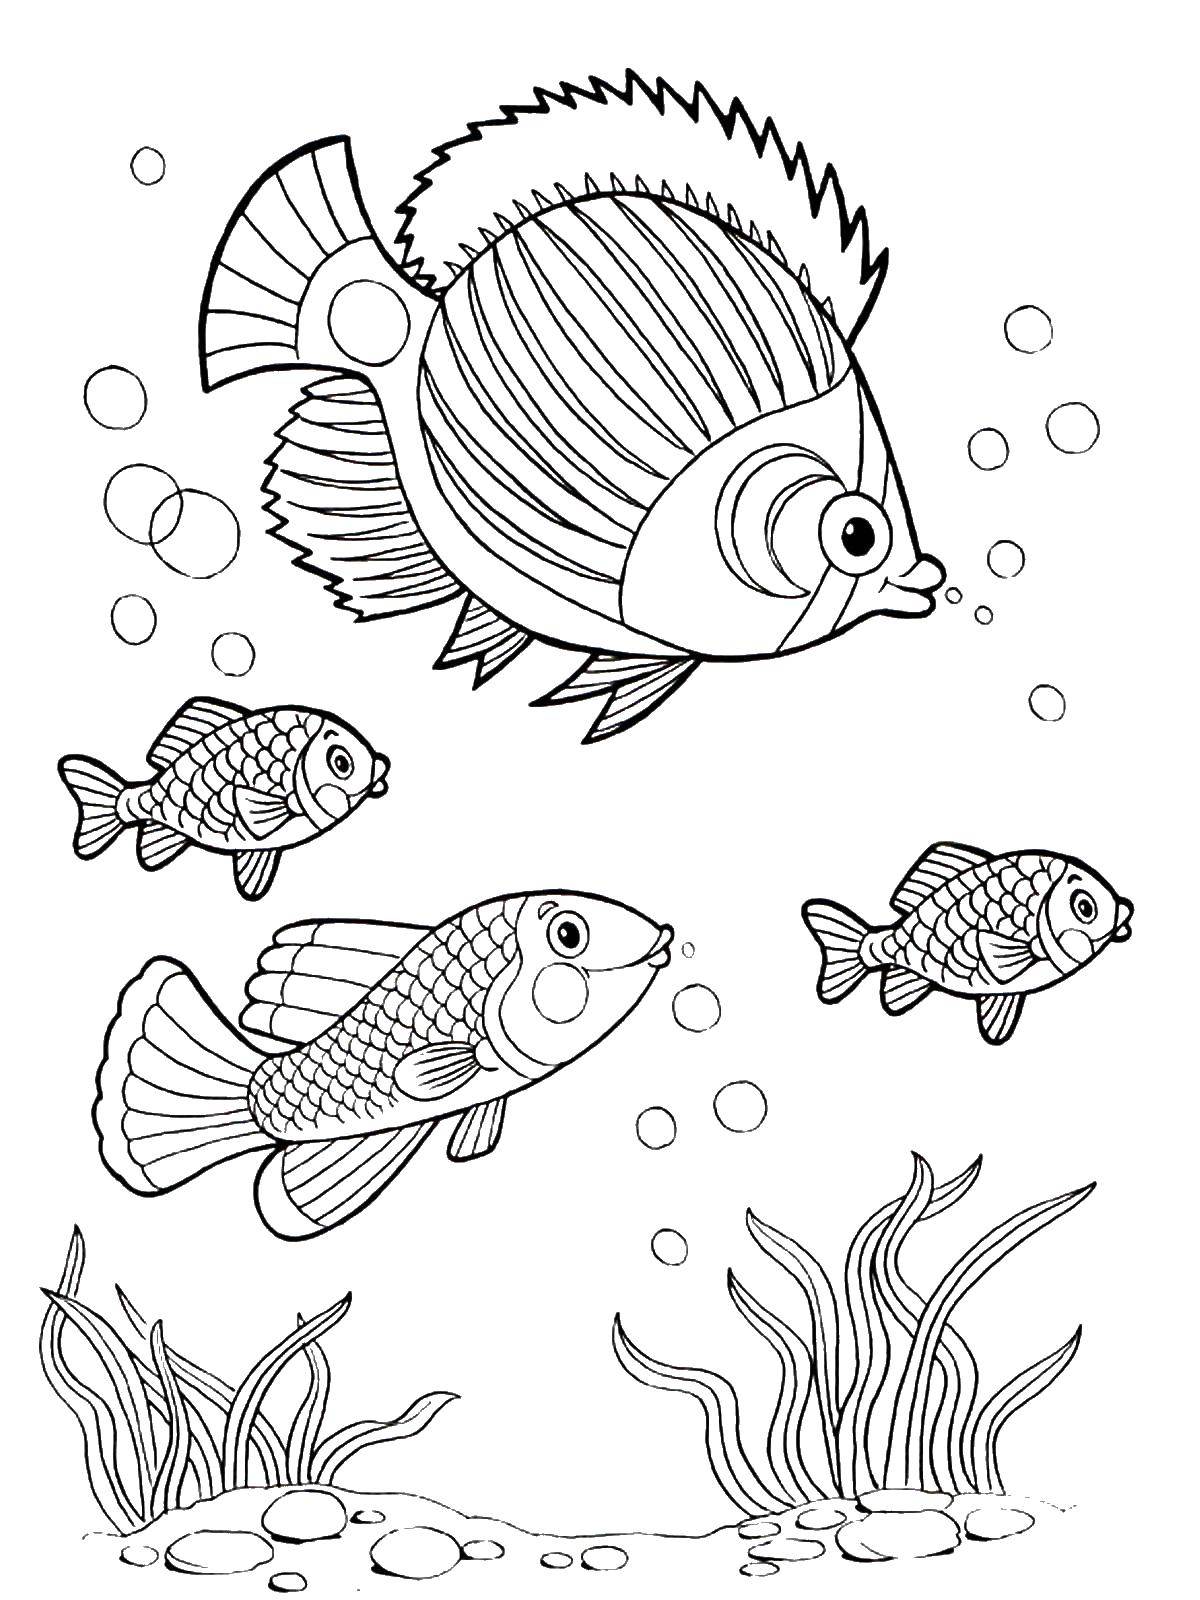 Раскраски рыбки для детей 3 4 лет. Рыба раскраска. Раскраска рыбка. Аквариумные рыбки раскраска для детей. Рыба раскраска для детей.